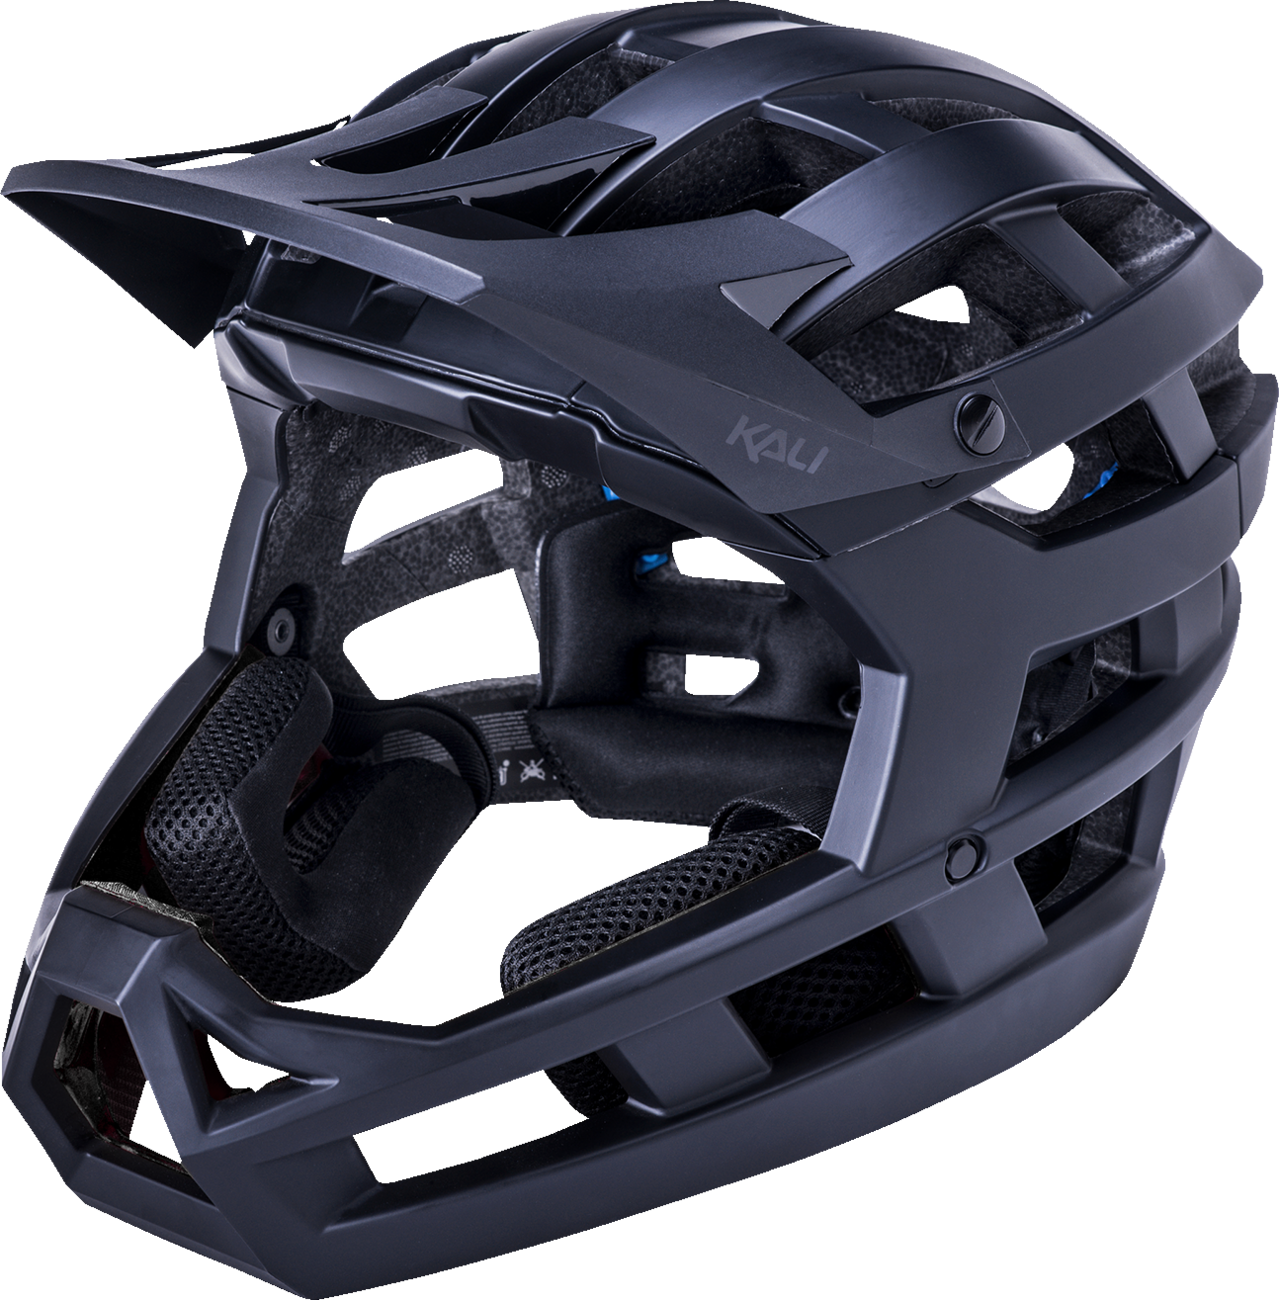 KALI Invader 2.0 Helmet - Matte Black - L-2XL 0221821117